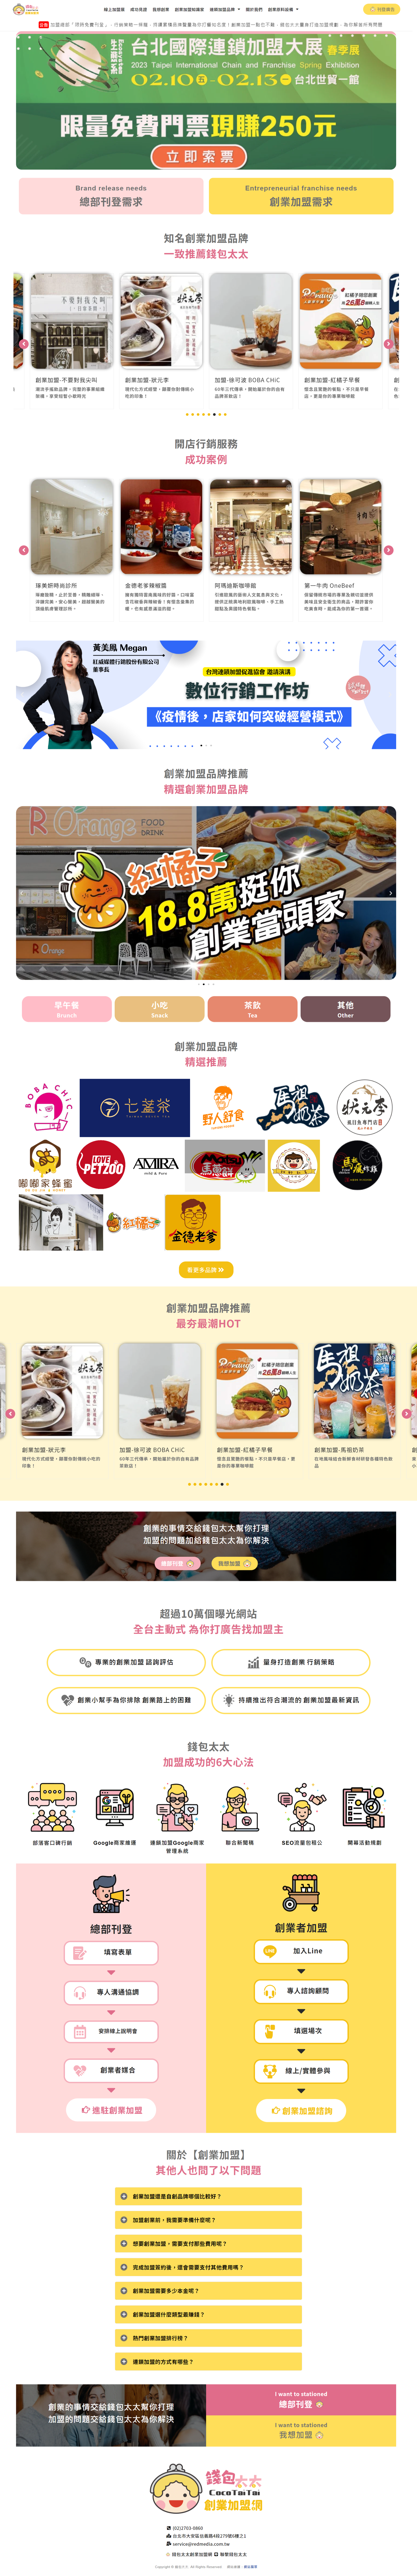 錢包太太創業加盟網，我們為了解決創業加盟的大小事，這裡有創業加盟網的小故事，同時也集結全台灣百大加盟品牌。